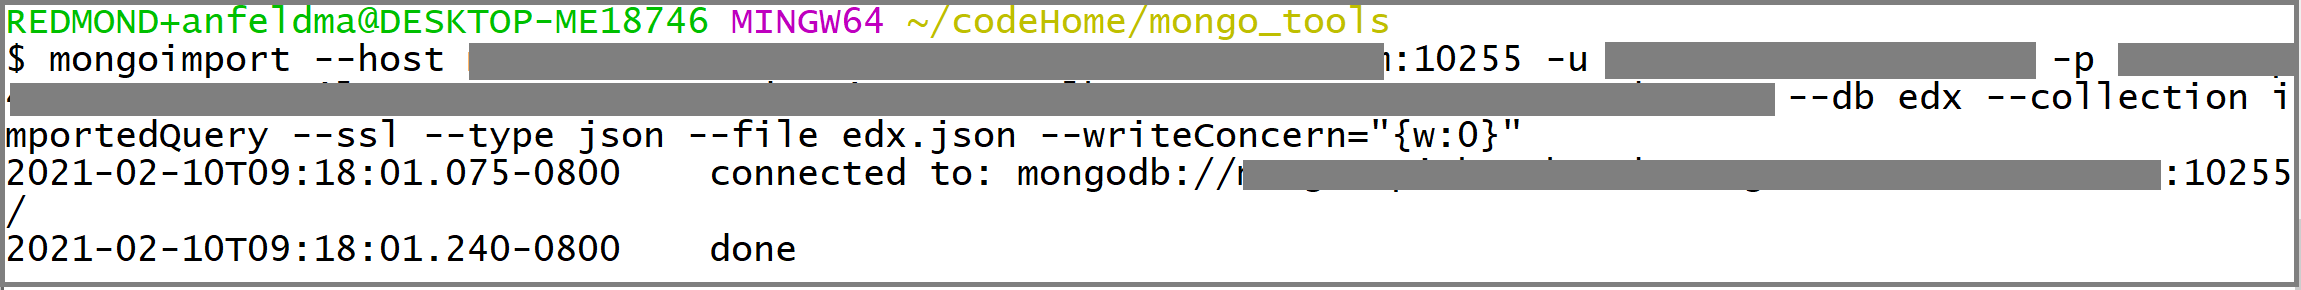 Képernyőkép a mongoimport hívásról.